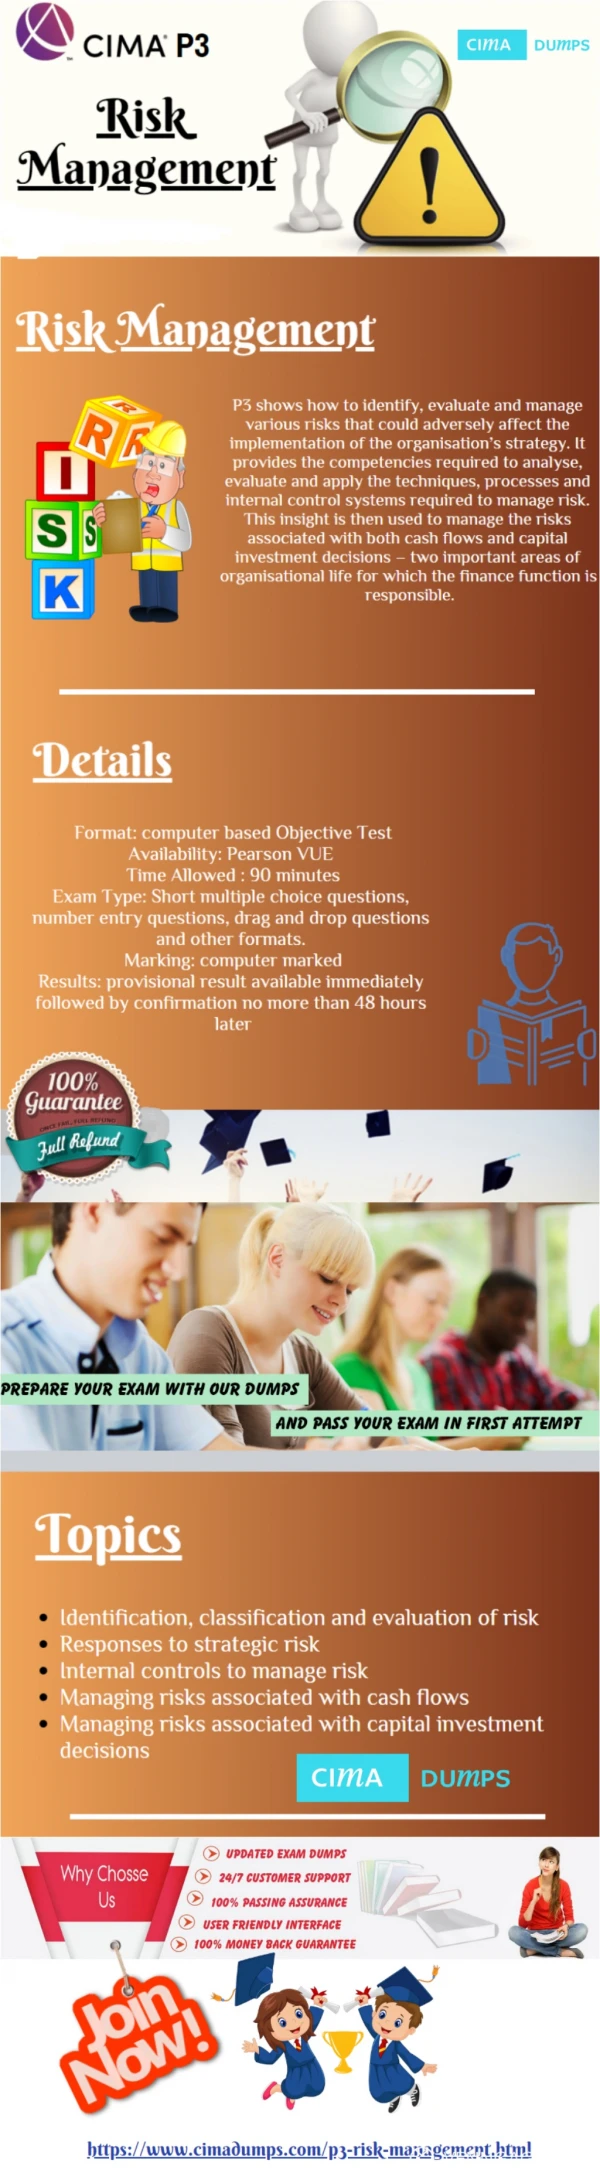 Verified Cima P3 Exam Questions - Cima P3 Exam Study Material Cimadumps.com